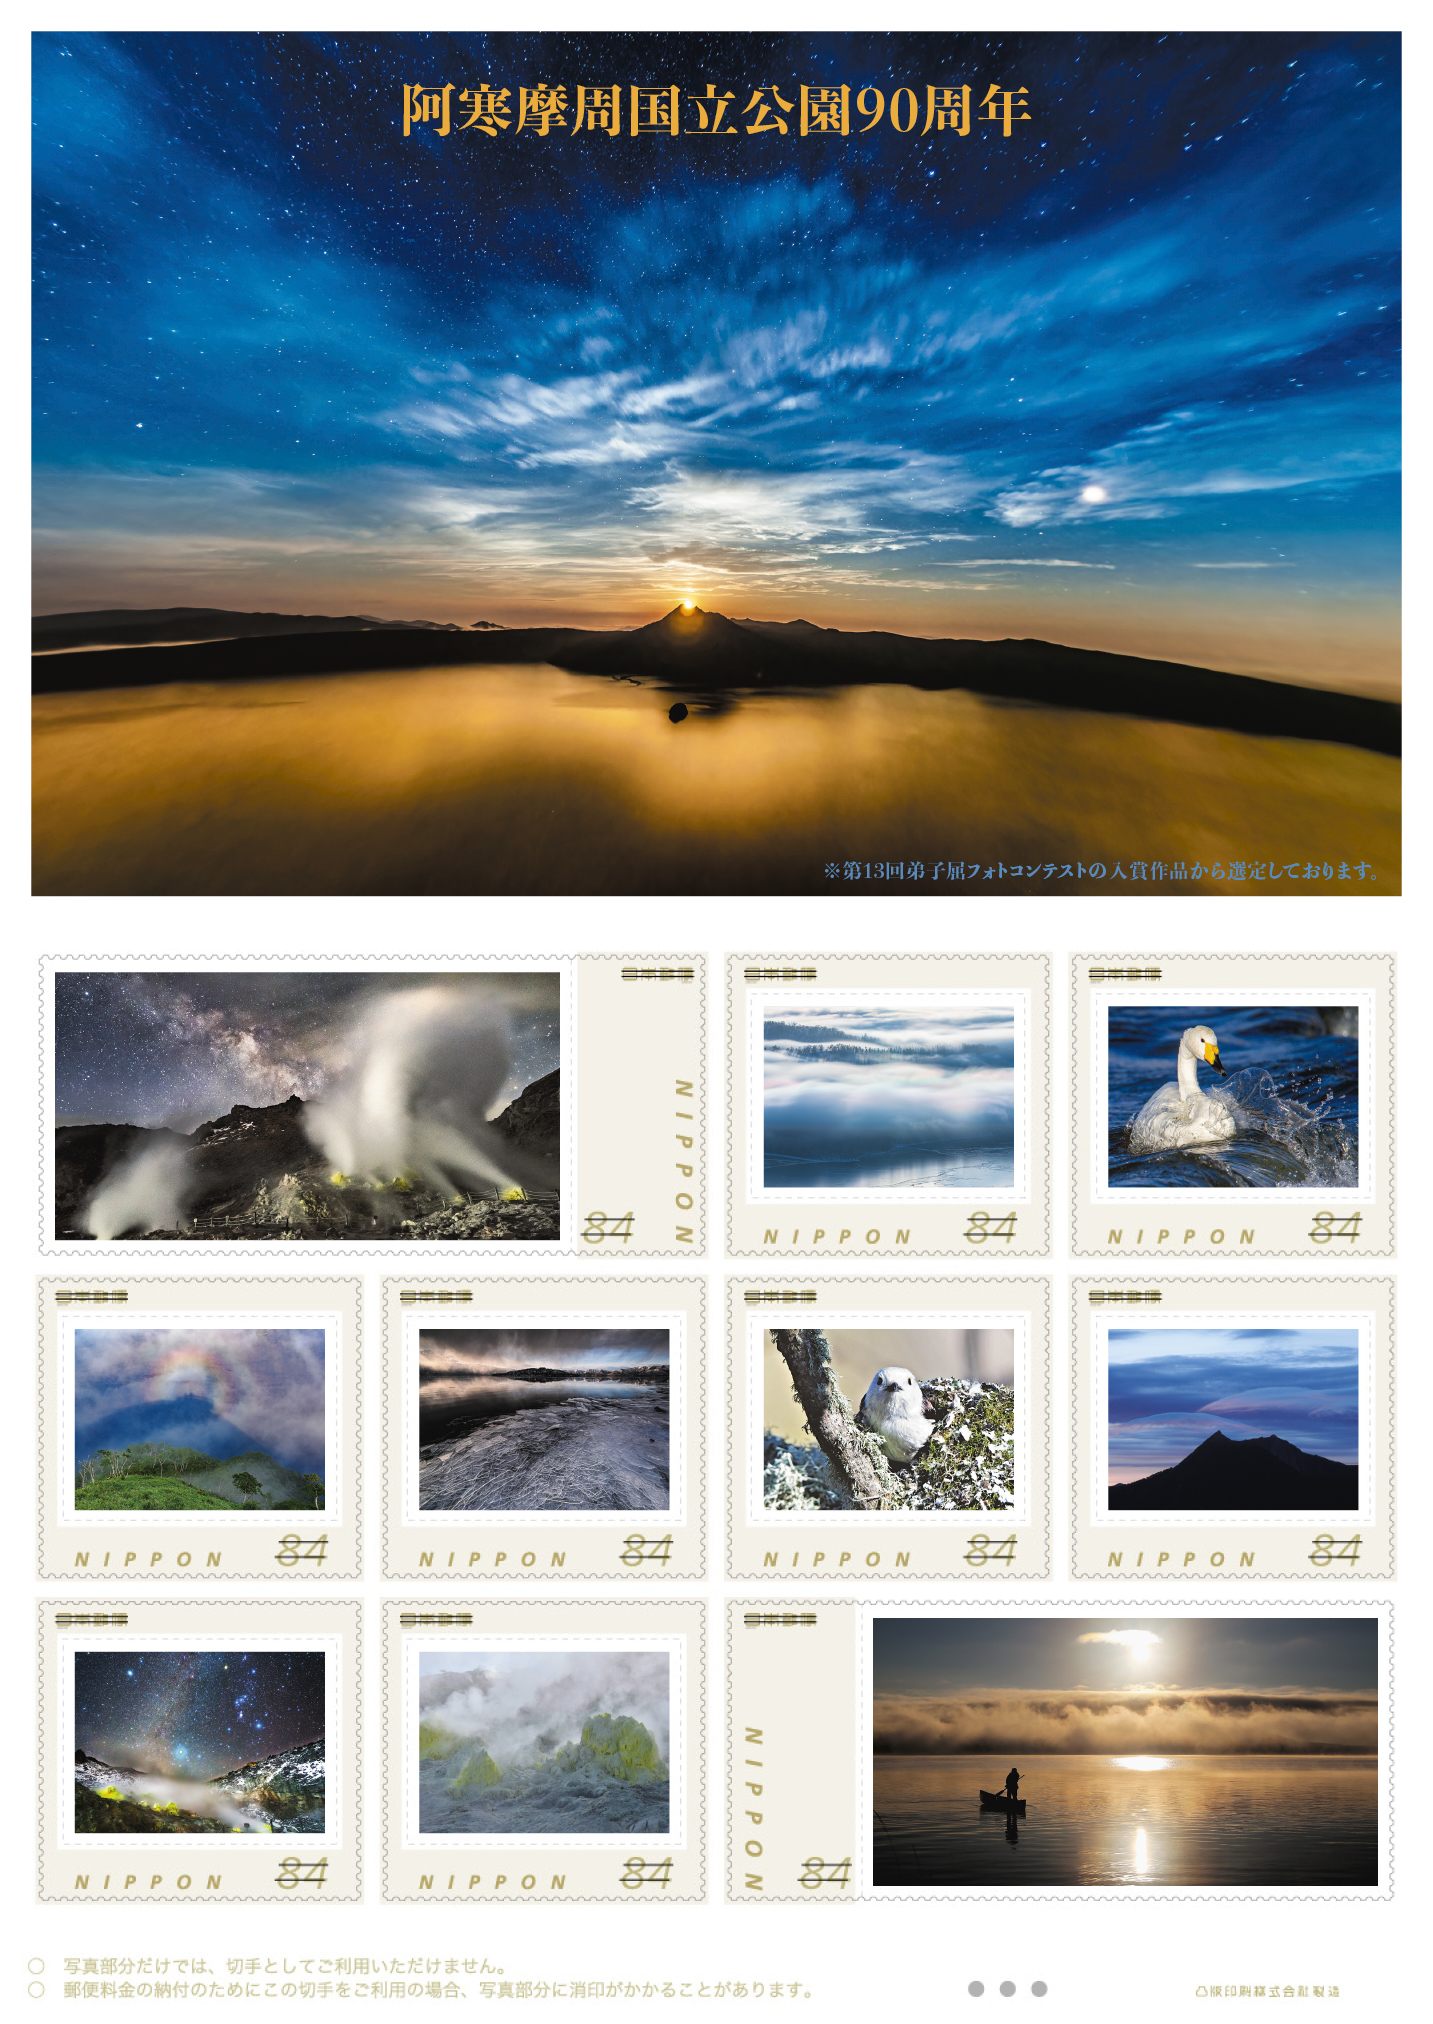 オリジナル フレーム切手「阿寒摩周国立公園90周年」の販売開始と贈呈式の開催